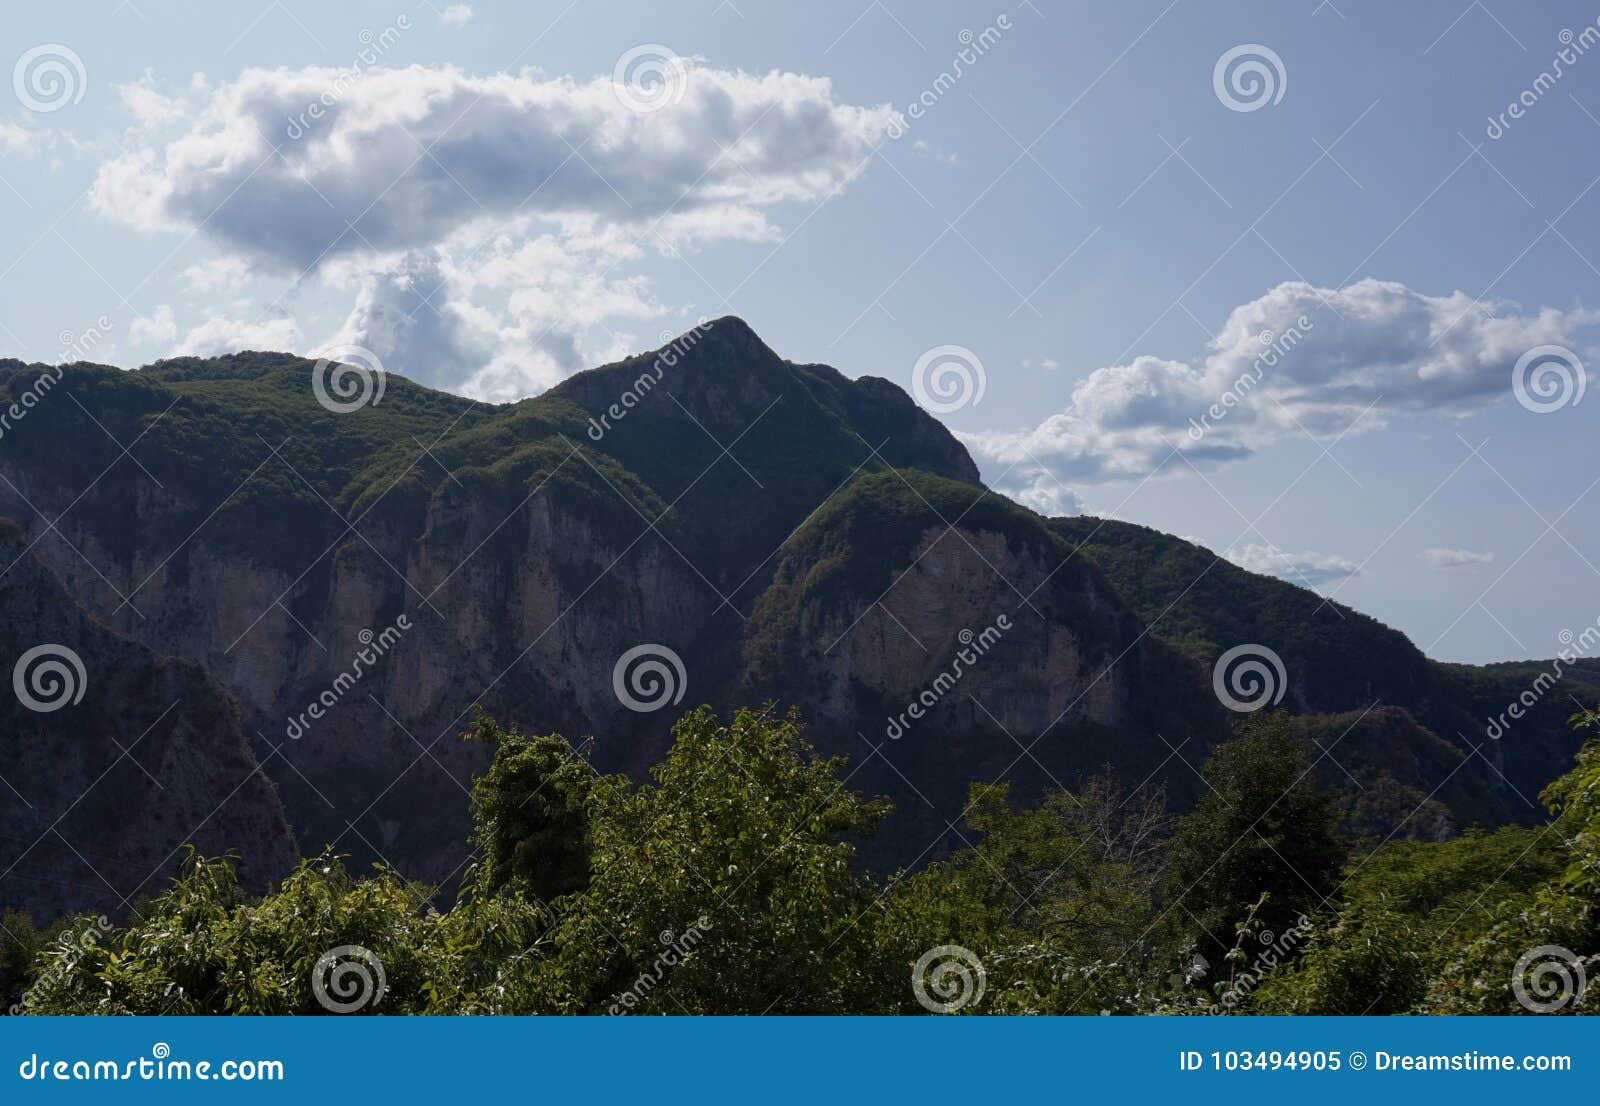 apuane mountain